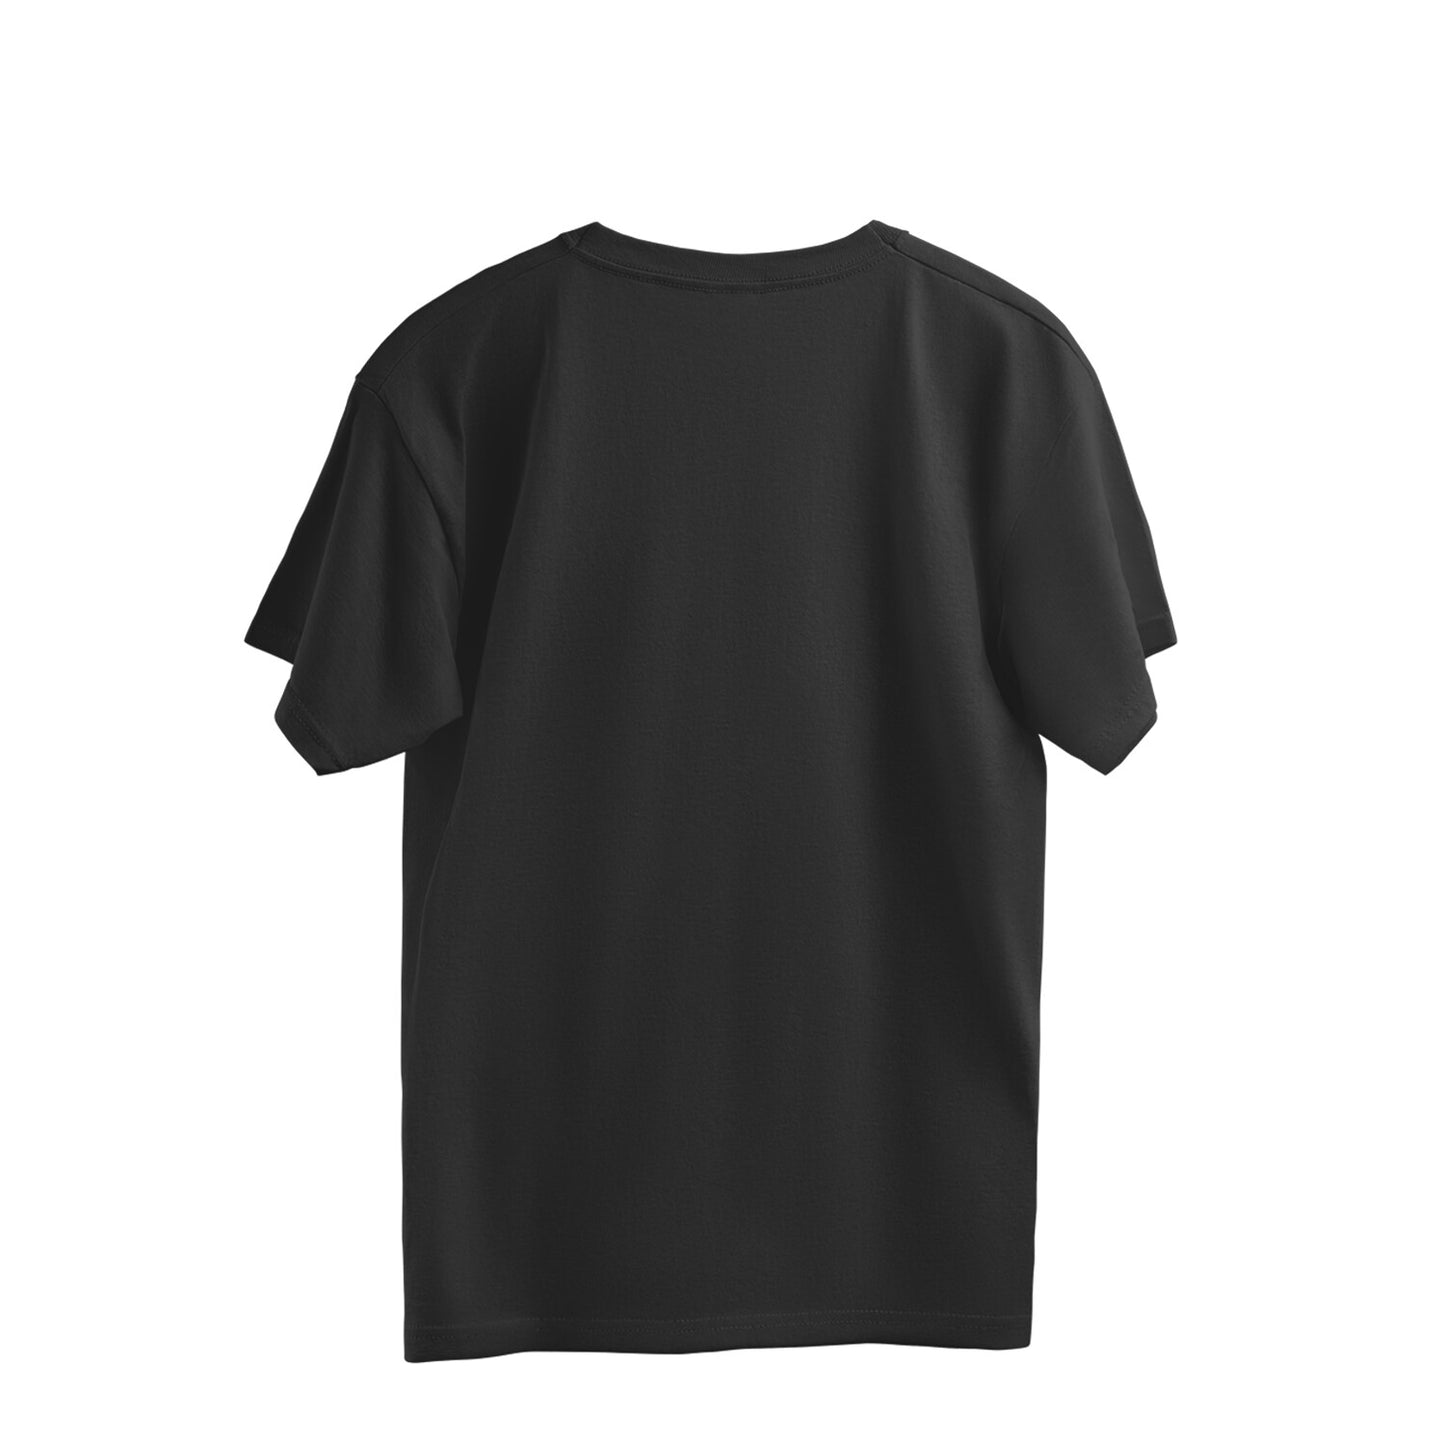 Kenough Unisex Oversized Boxy T-shirt